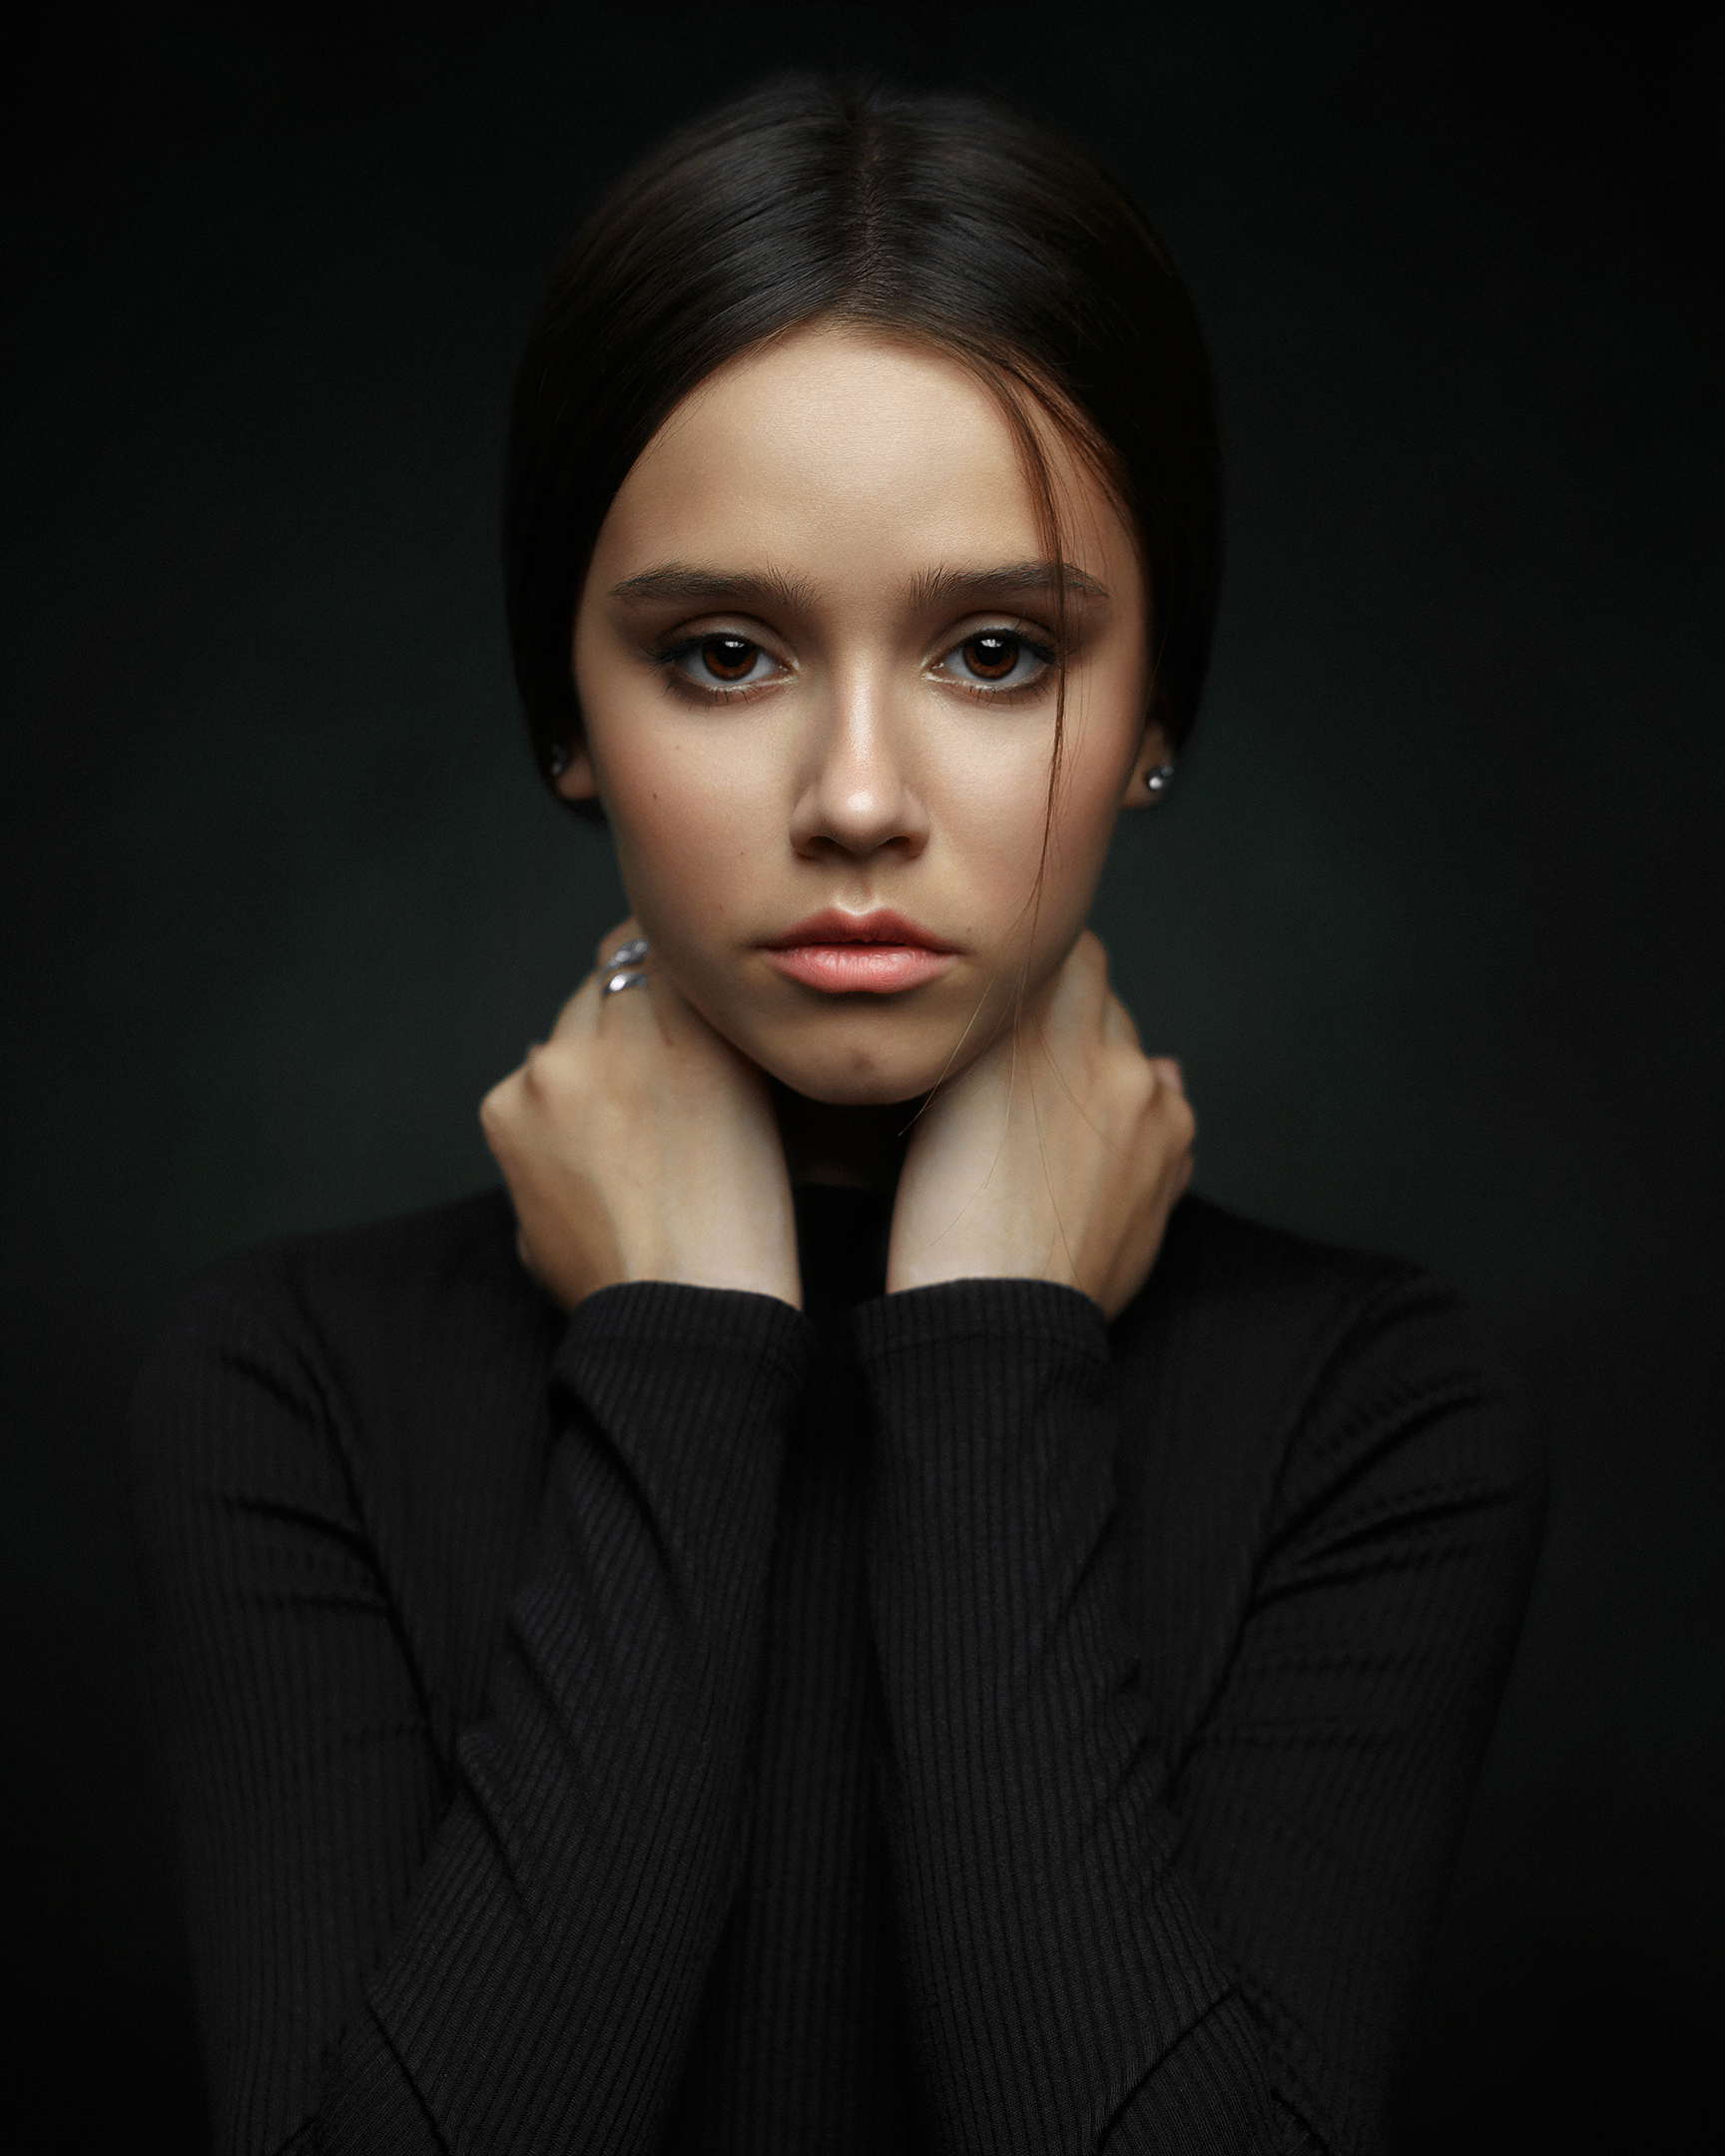 Ivan Kovalyov Women Dark Hair Looking At Viewer Blouse Black Clothing Brown Eyes Portrait Symmetry S 1728x2160